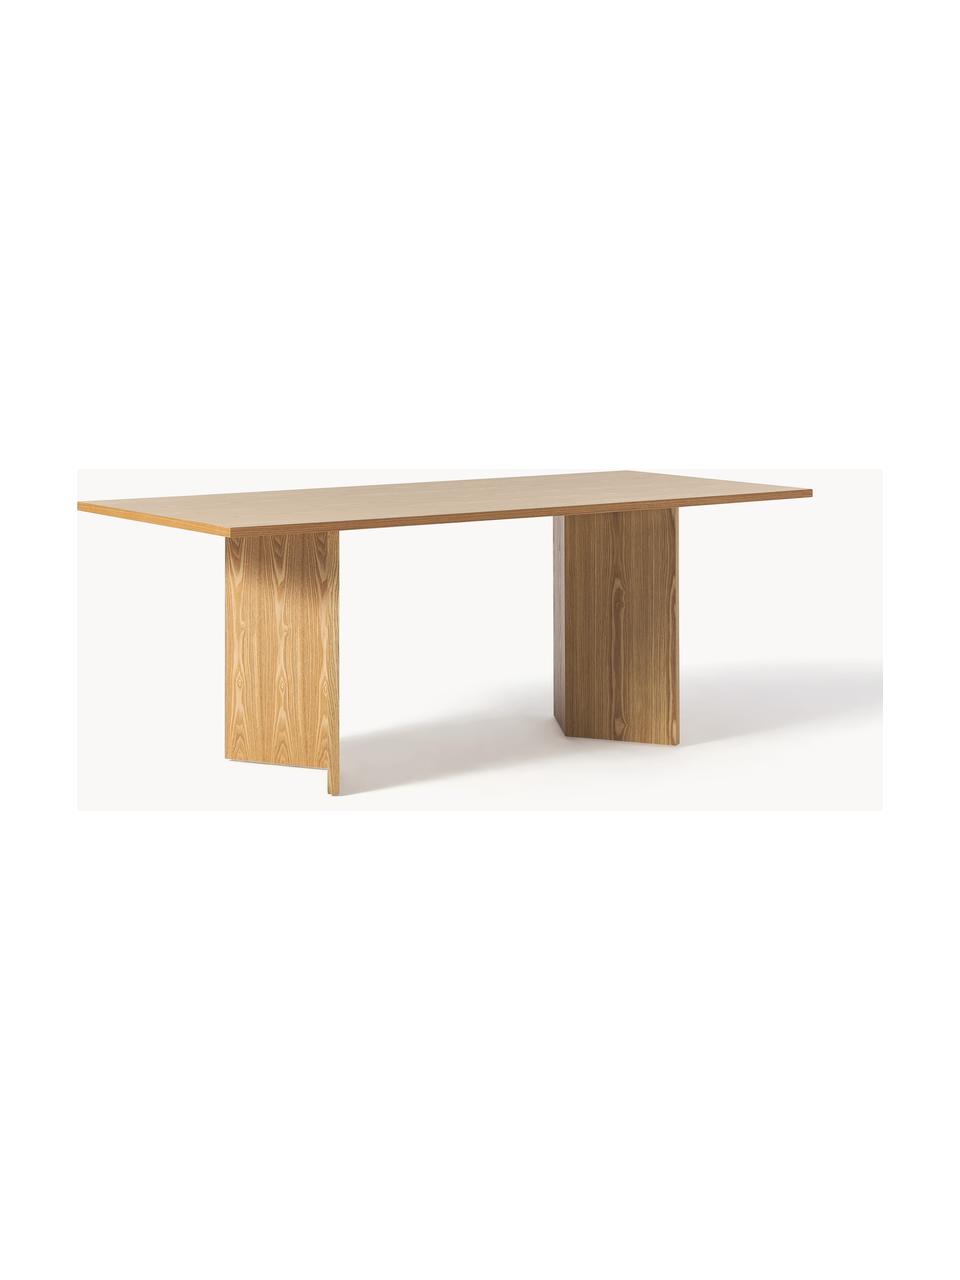 Tavolo in legno Toni, 200 x 90 cm, Pannello MDF (fibra a media densità) con finitura in legno di quercia laccato, certificato FSC, Legno di frassino, Larg. 200 x Prof. 90 cm